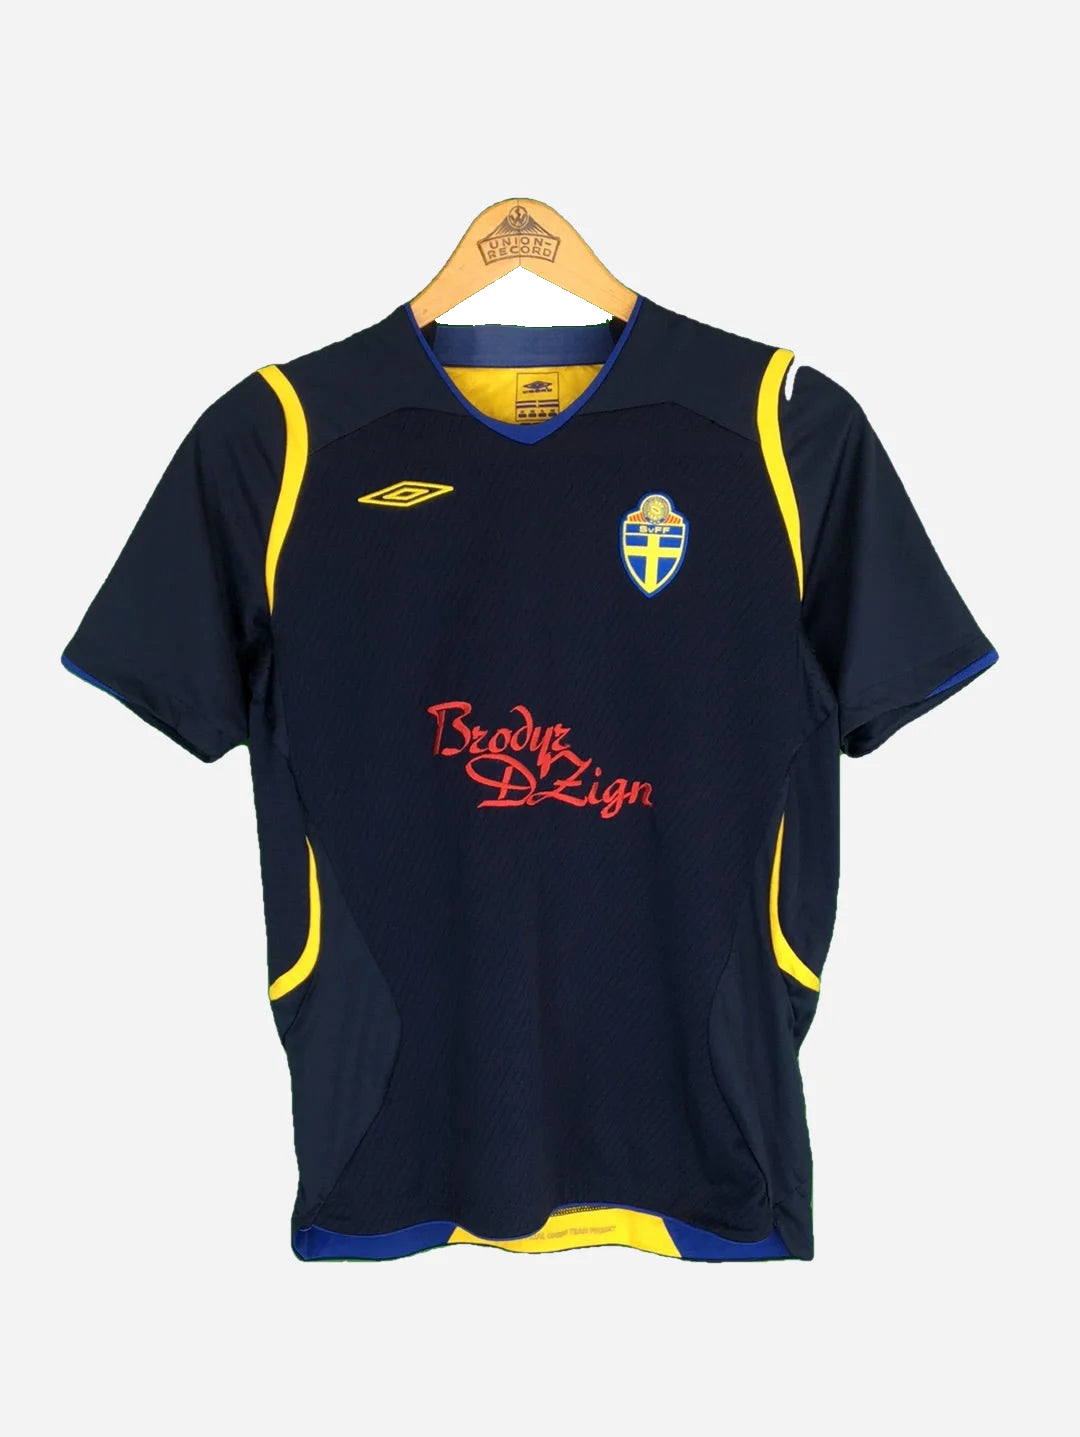 Umbro Sweden jersey (XS)